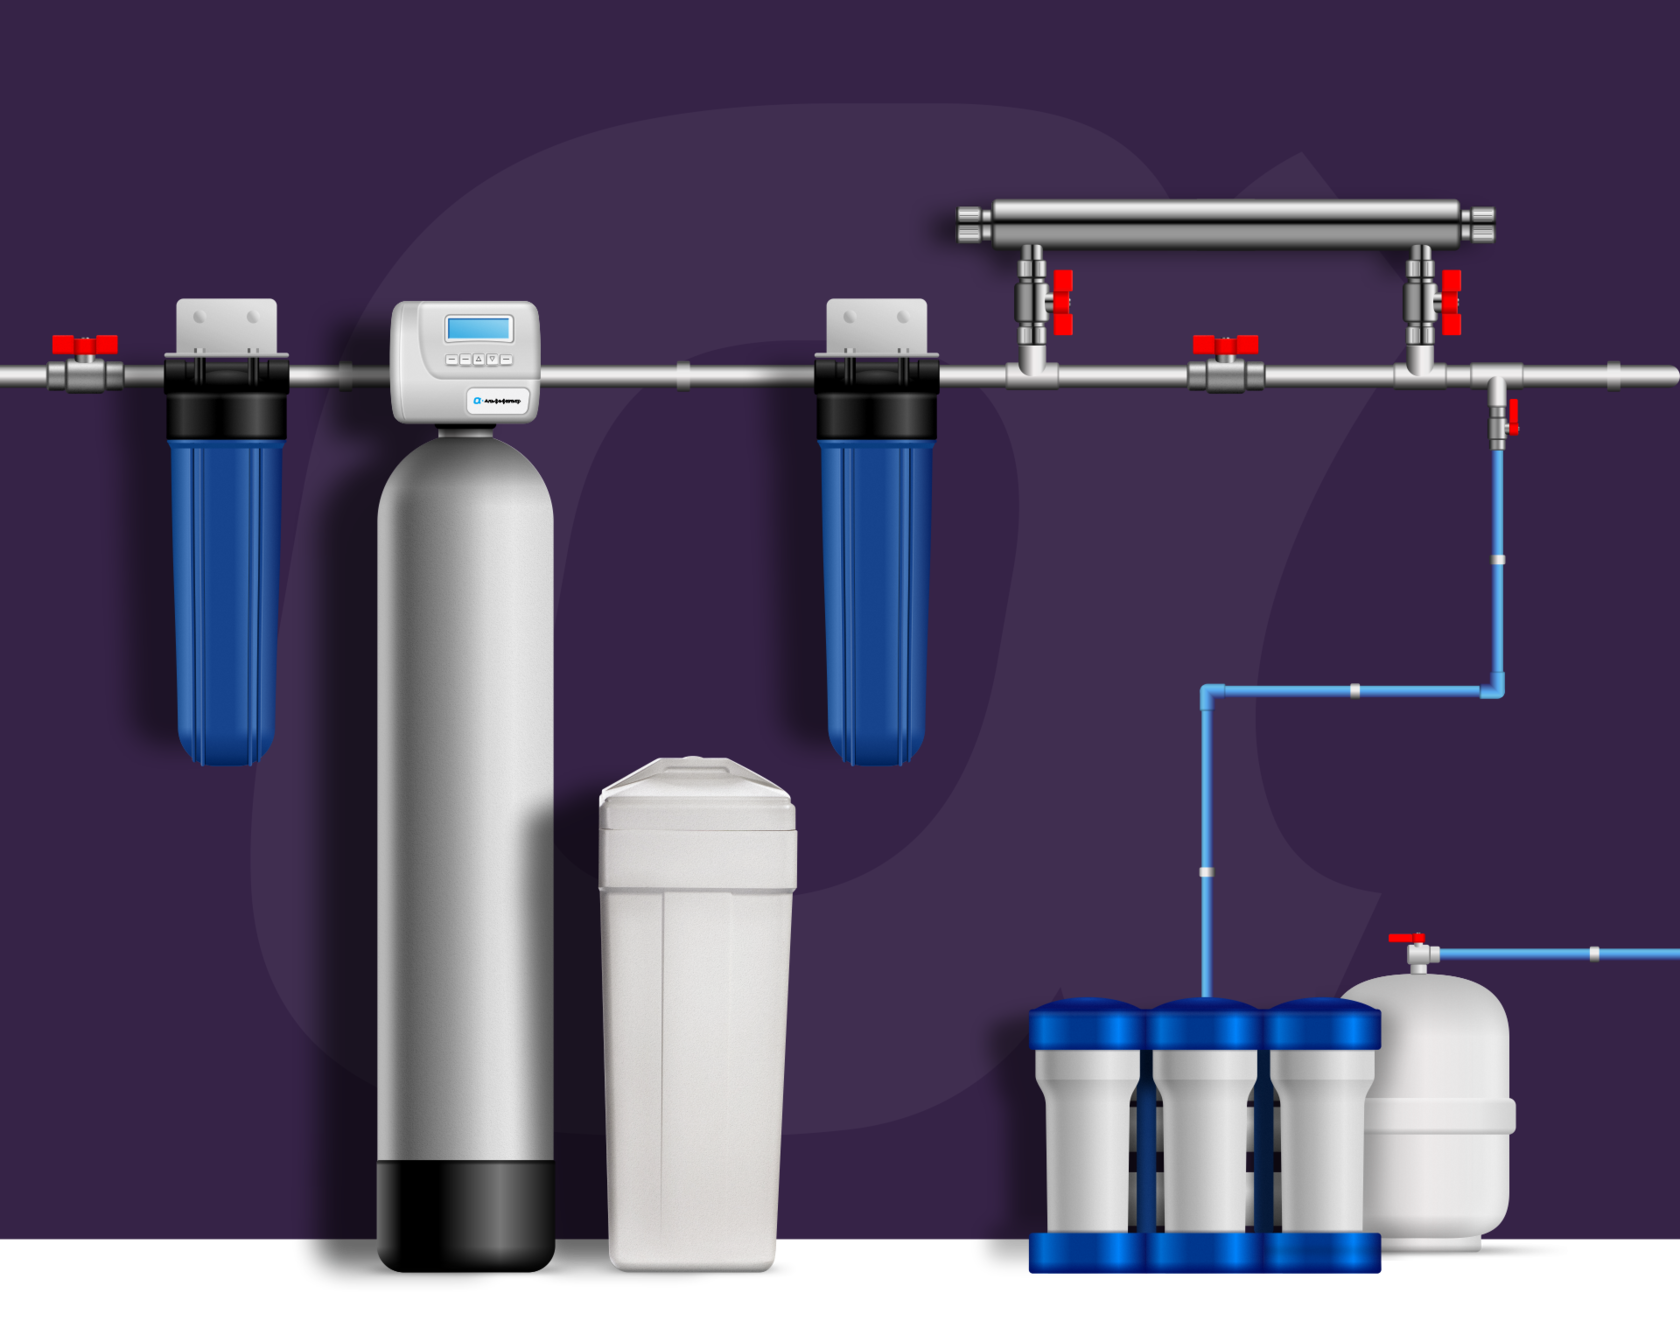 Водоподготовка котельной: обязательные и дополнительные ступени очистки воды